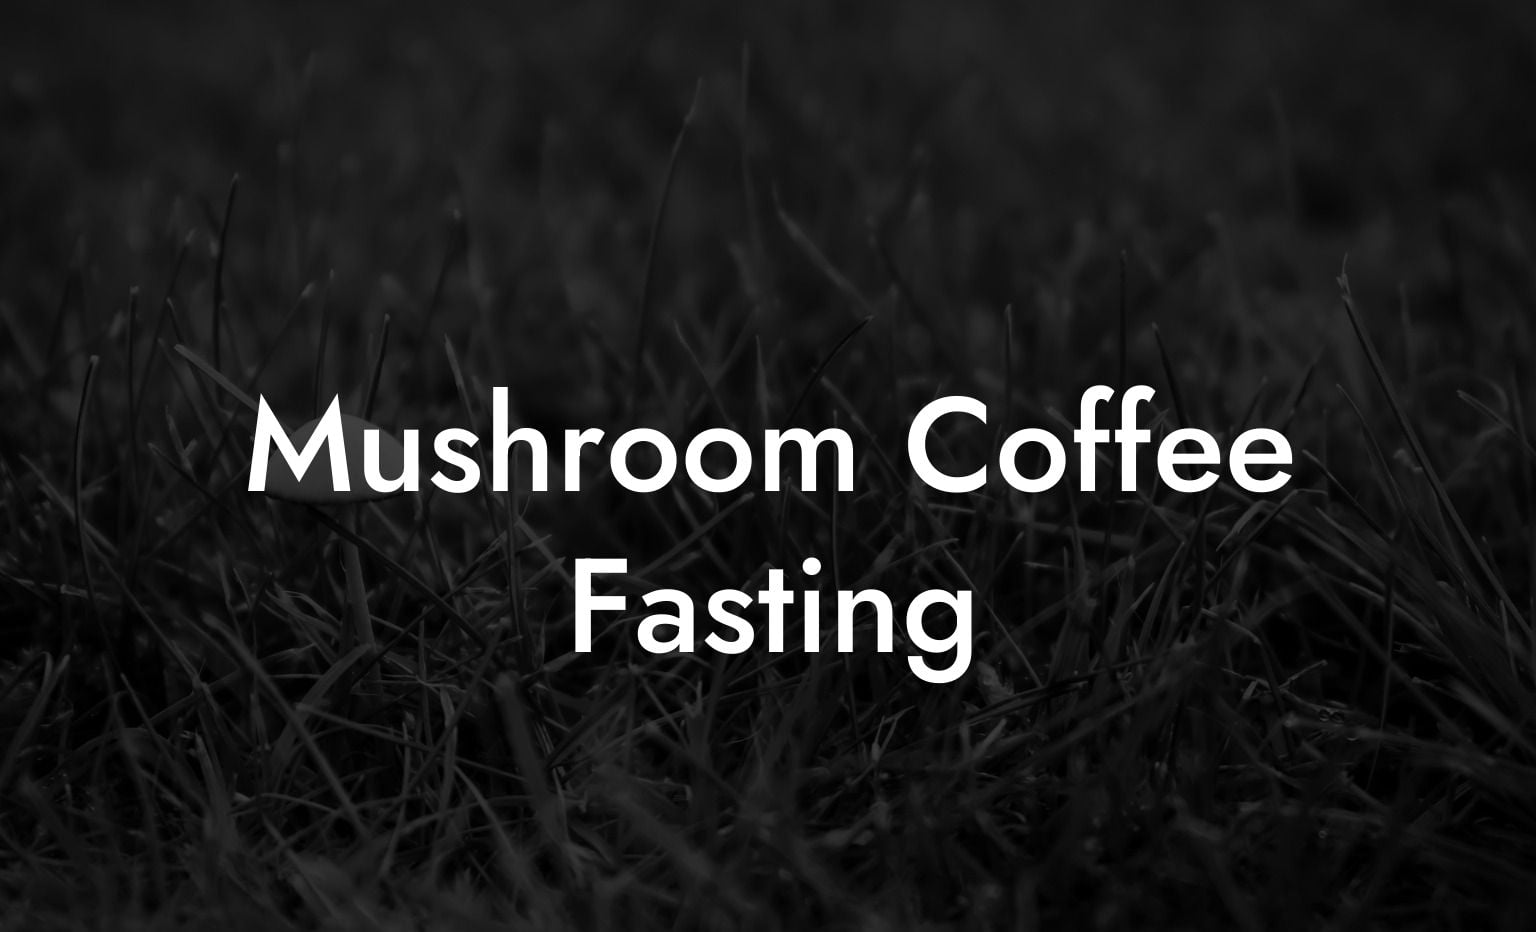 Mushroom Coffee Fasting